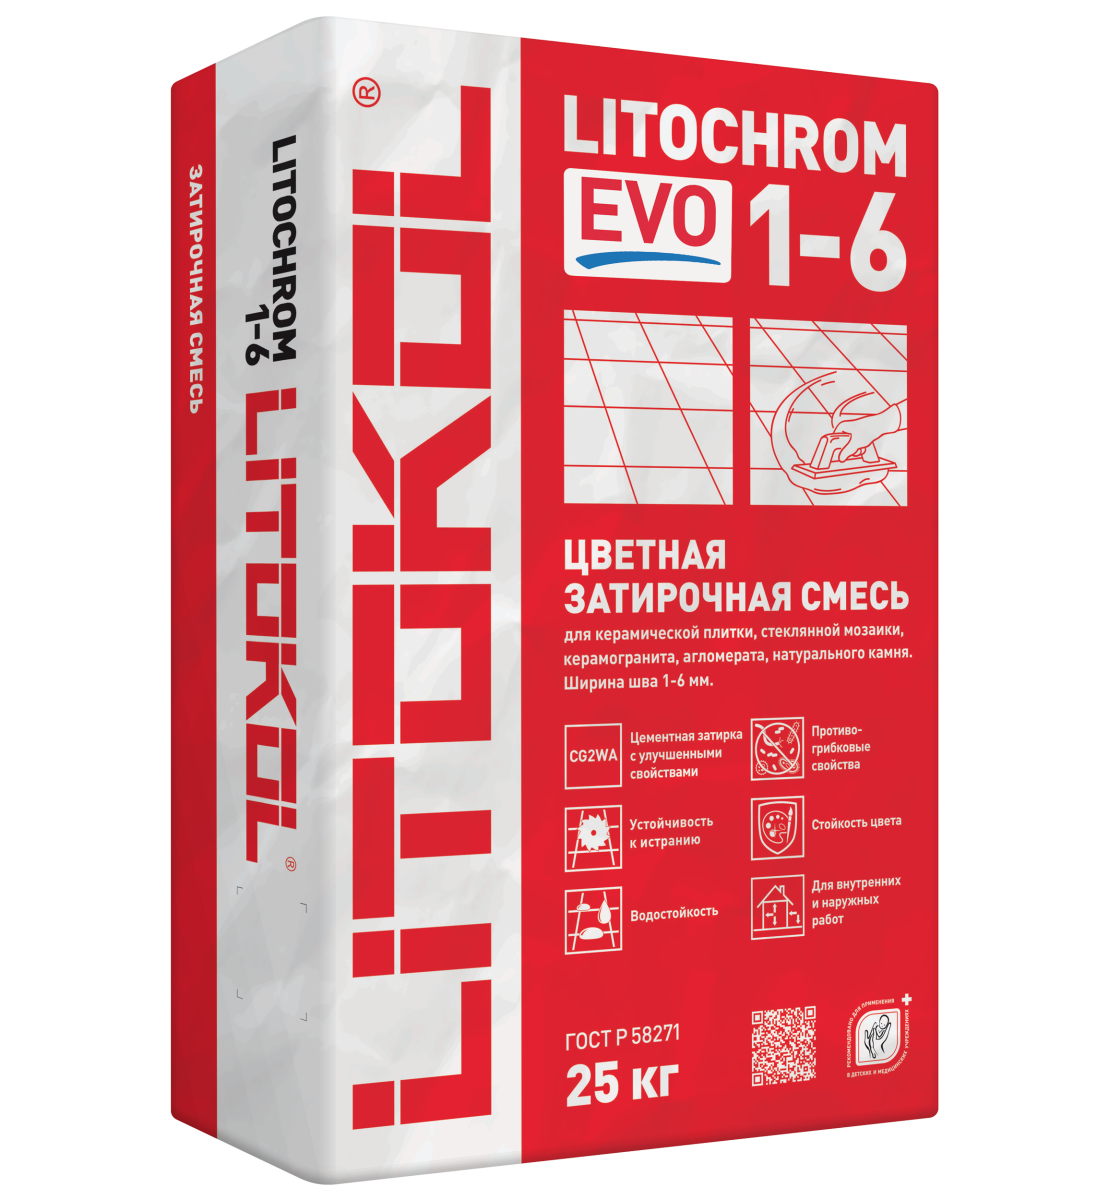 Литокол Litochrom 1-6 EVO LE.215 затирочная смесь Крем-брюле 25кг